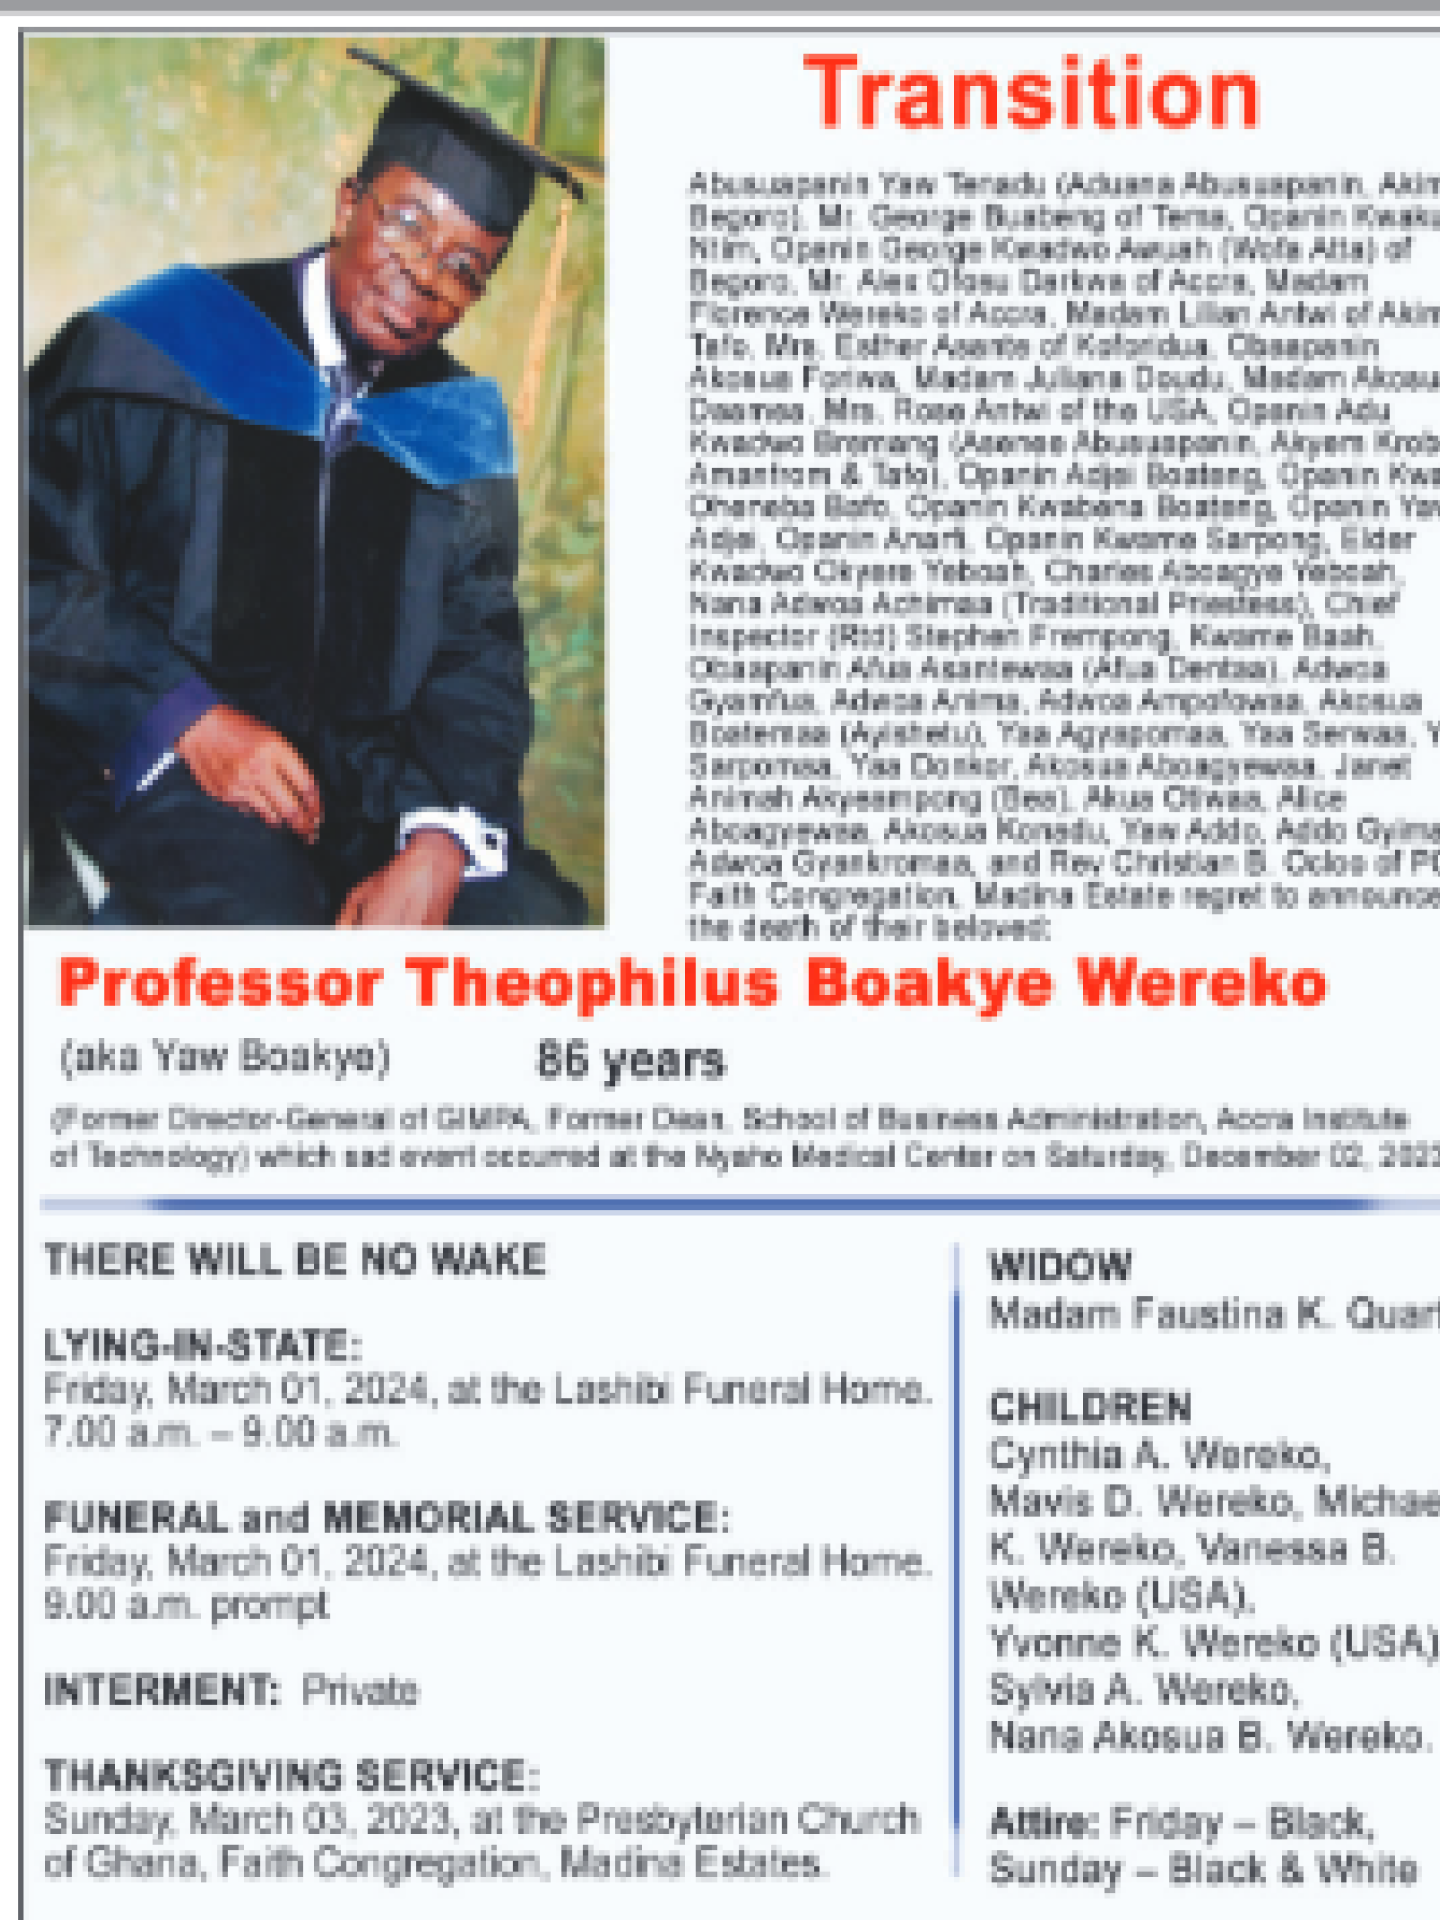 Professor Theophilus Boakye Wereko